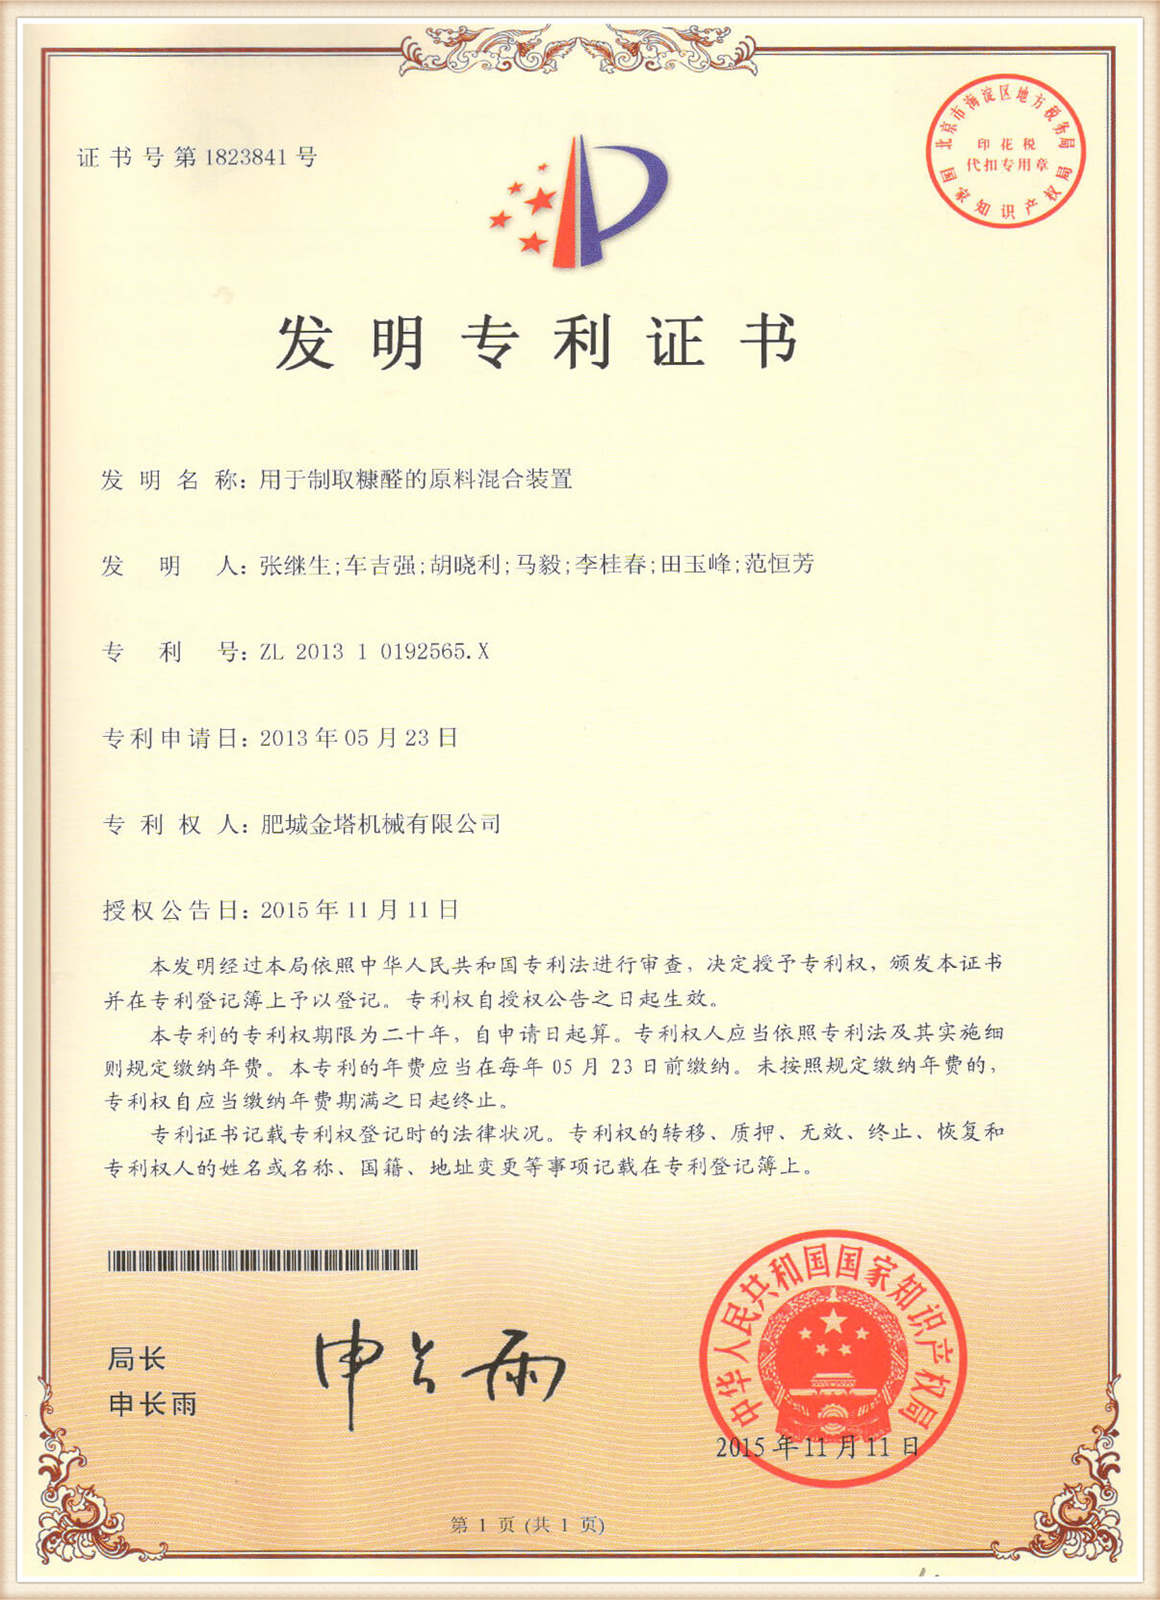 प्रमाणीकरण 11